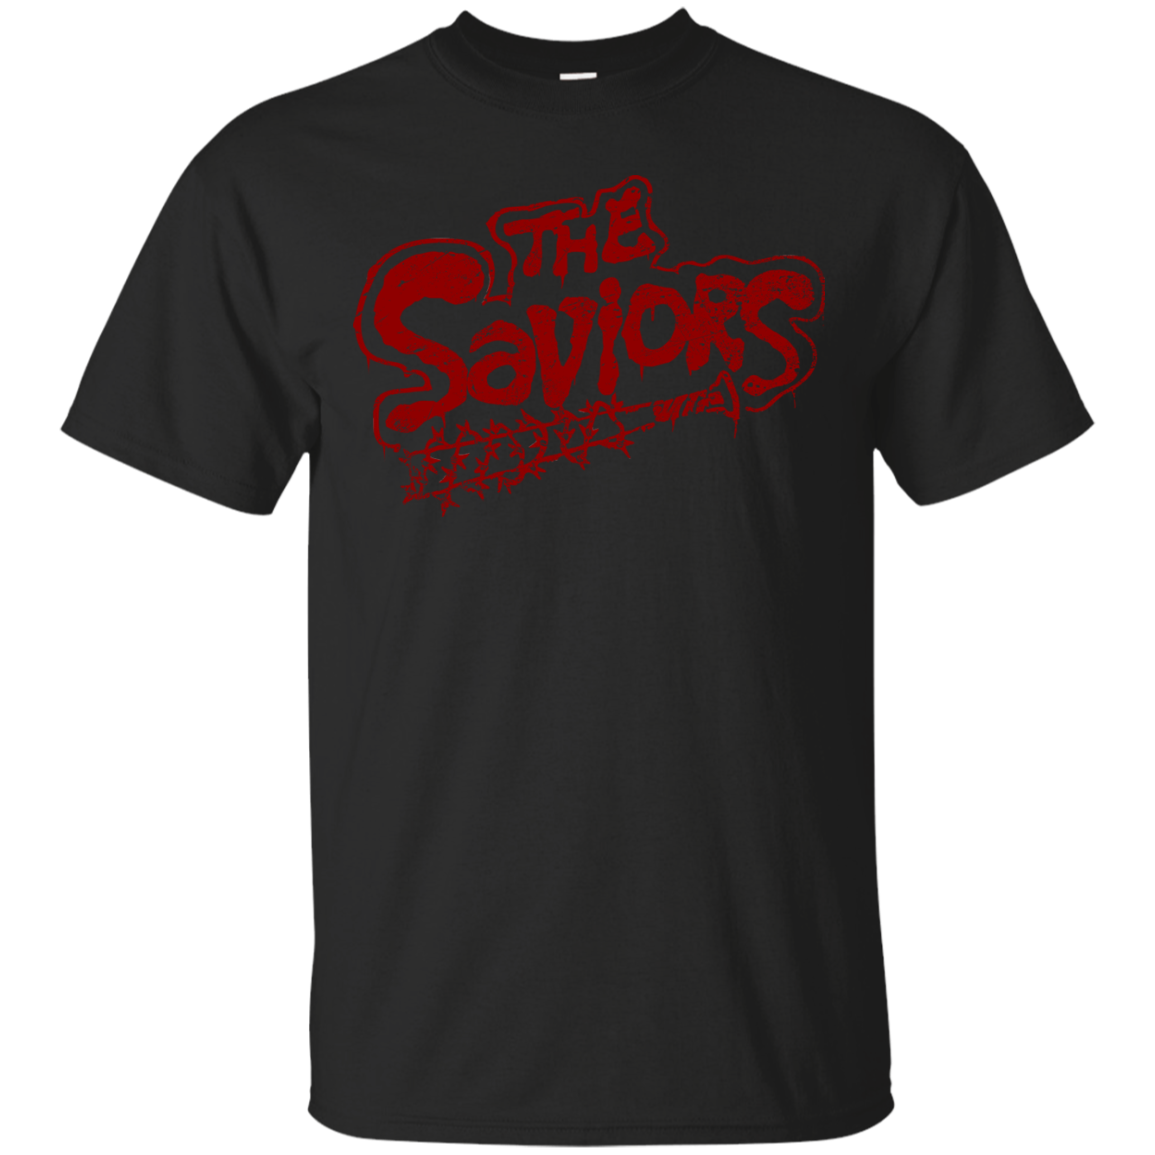 The Saviors T-Shirt